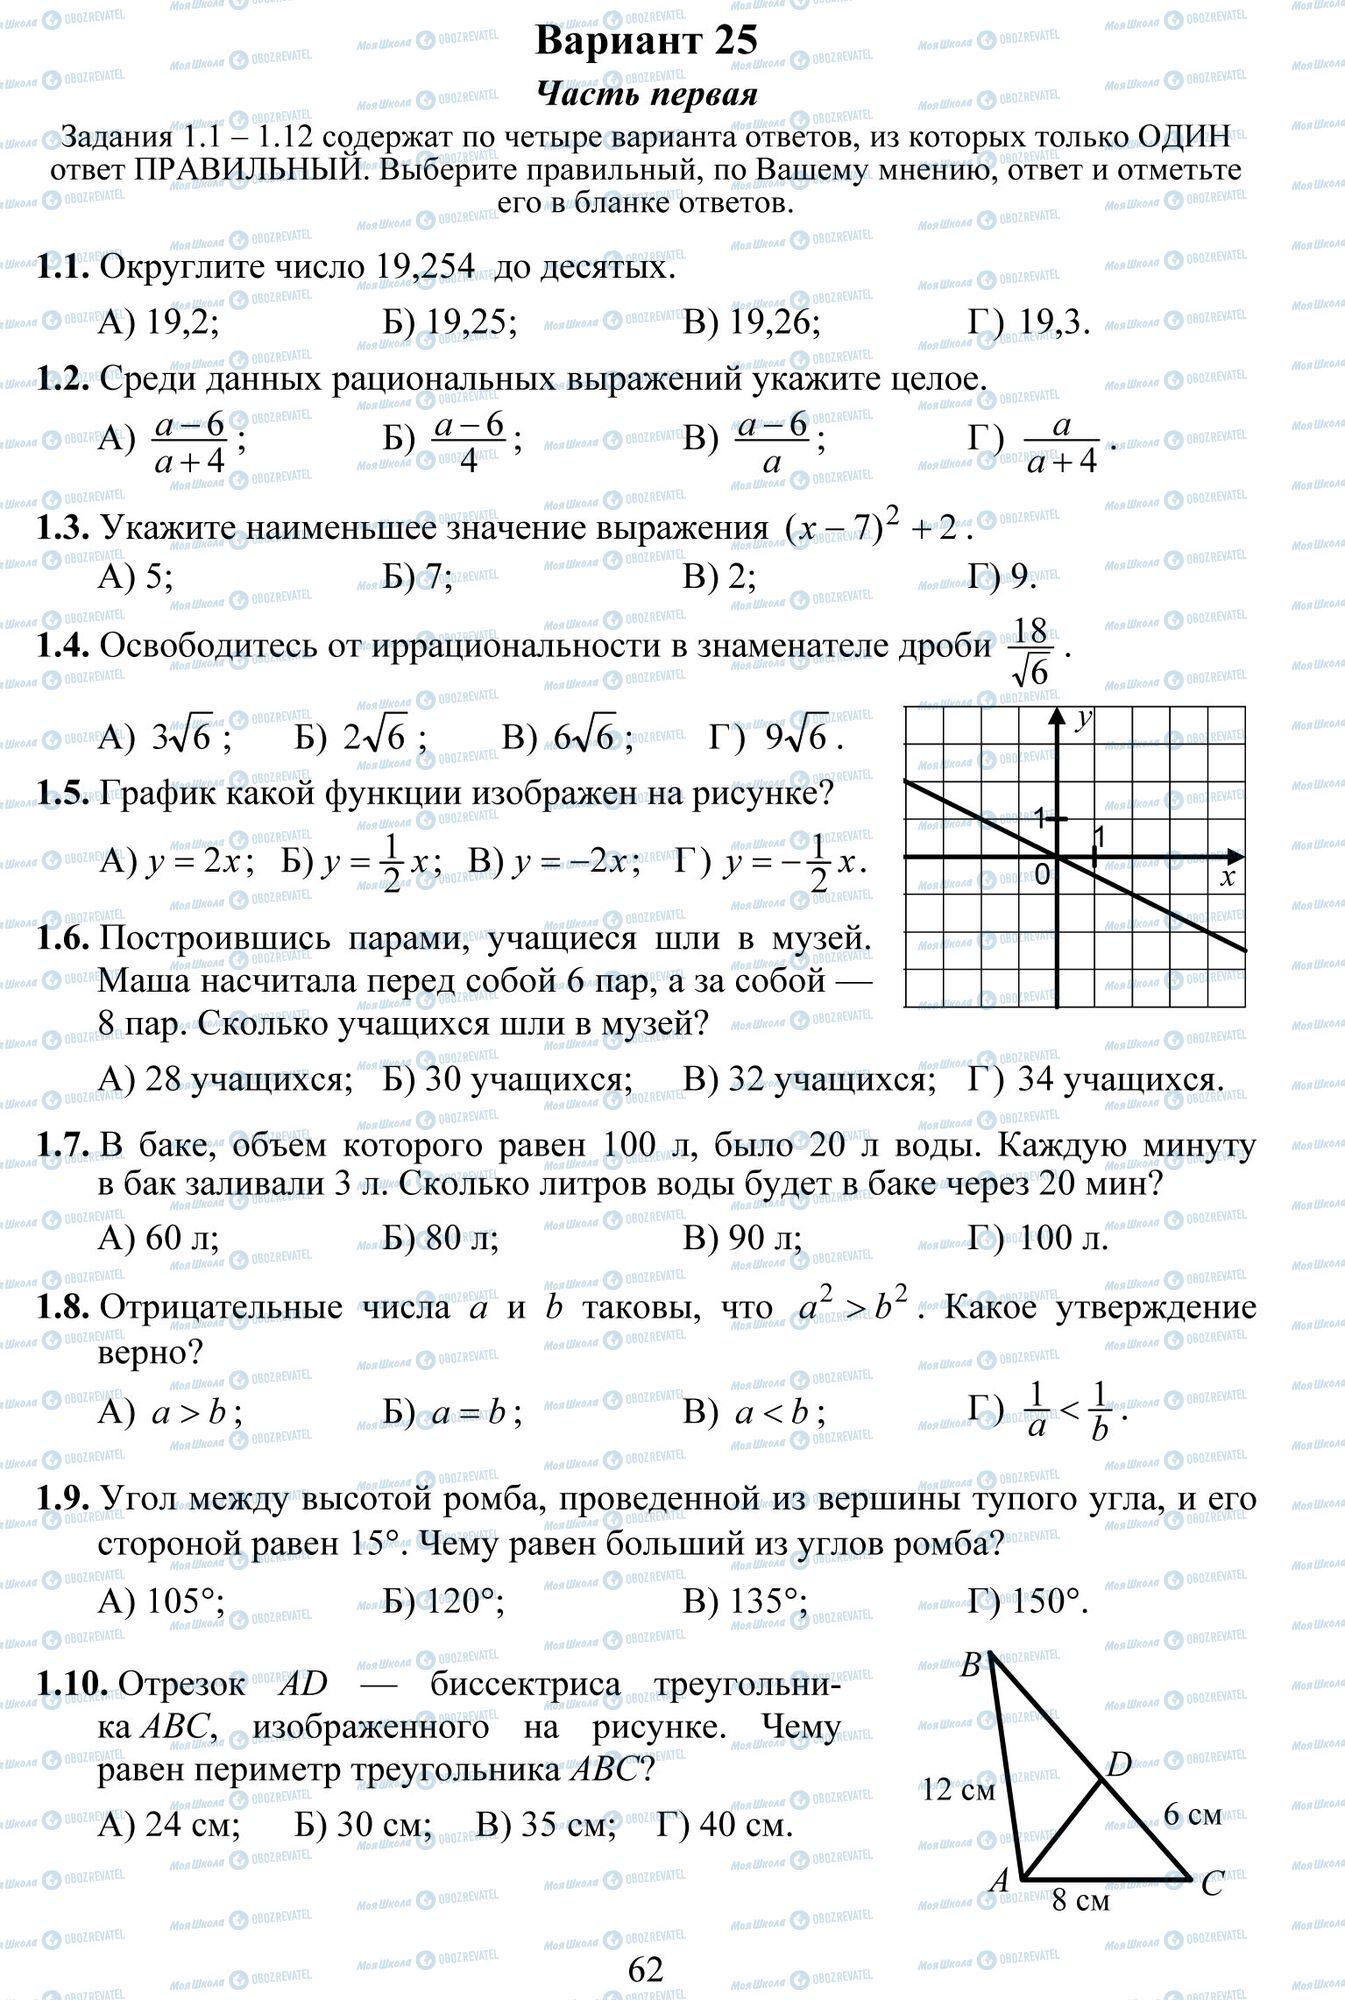 ДПА Математика 9 класс страница 1-10